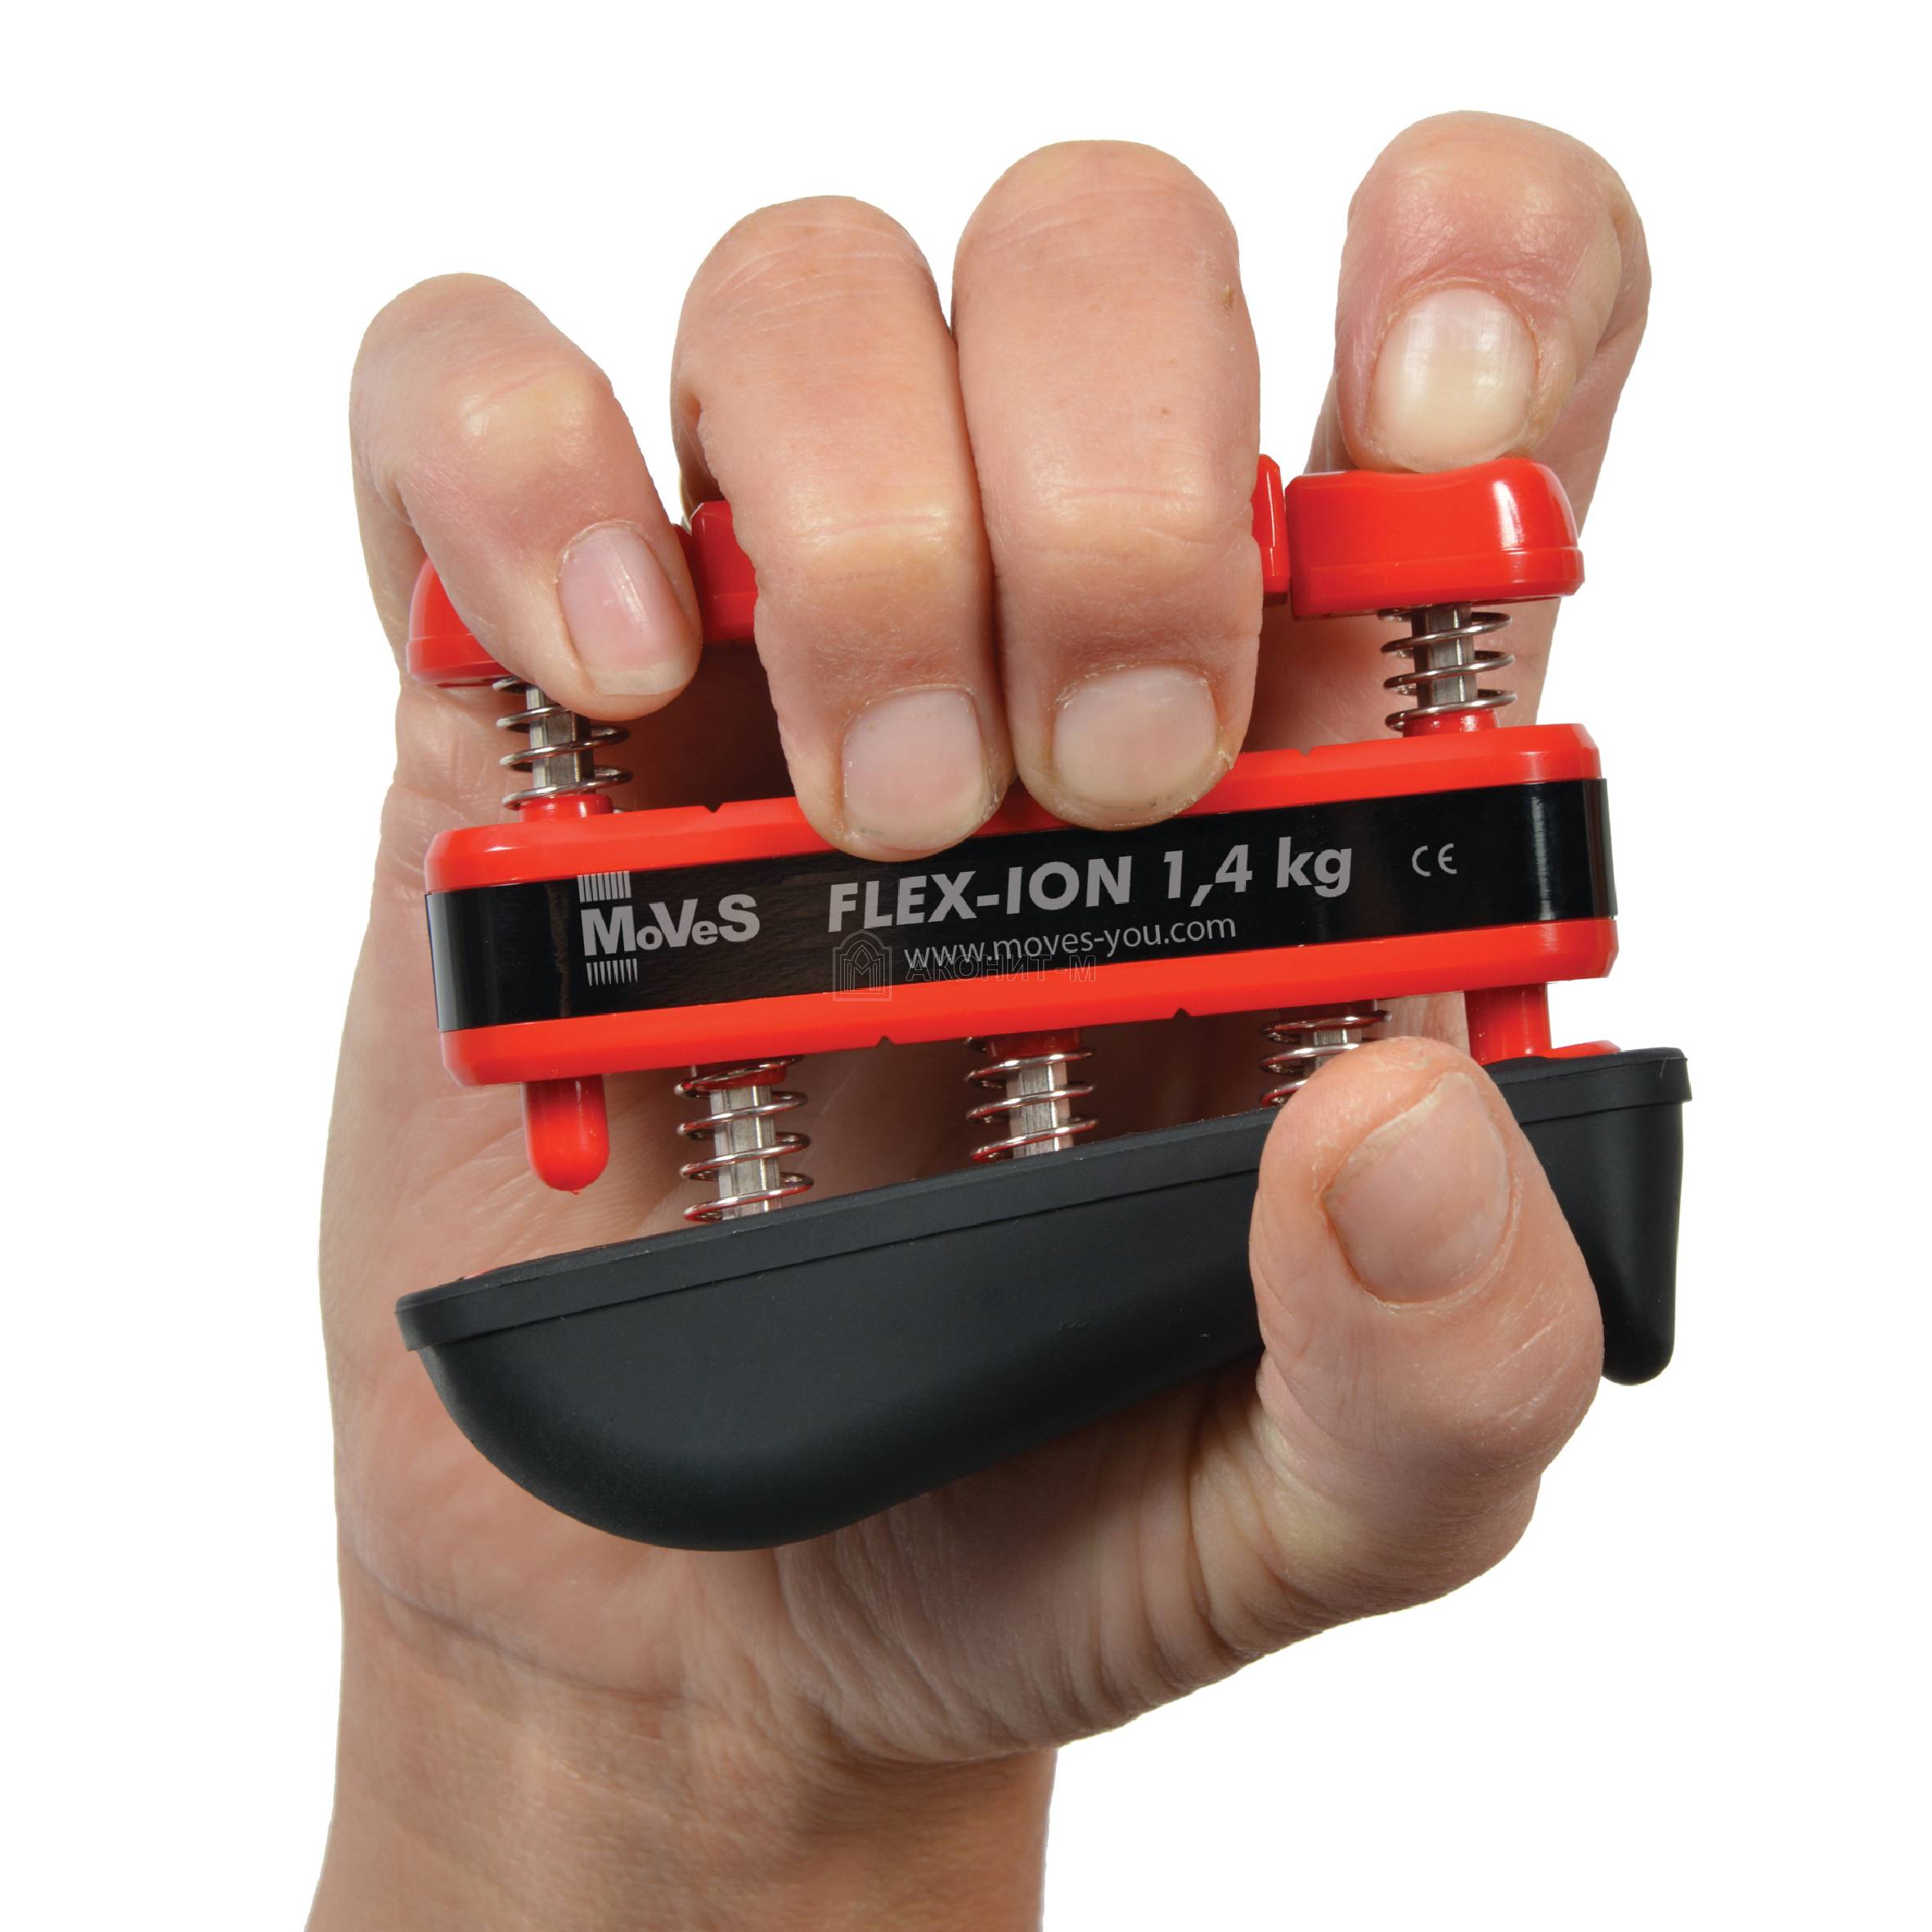 Эспандер для каждого пальца MoVeS - низкая нагрузка - 0,7 кг на палец